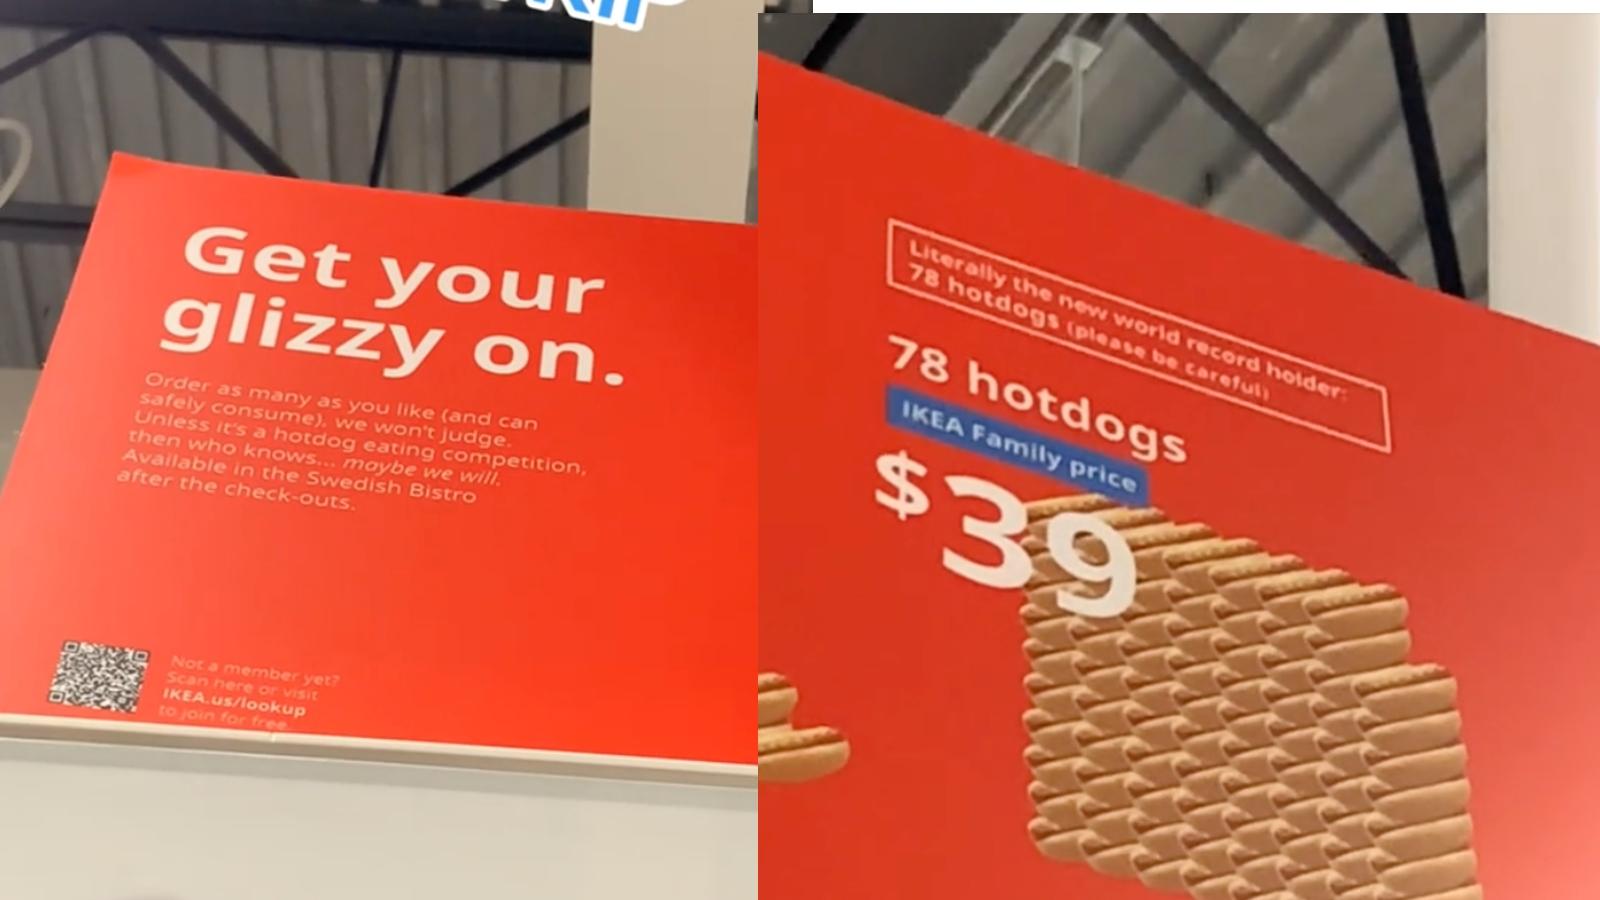 IKEA hotdog bargain